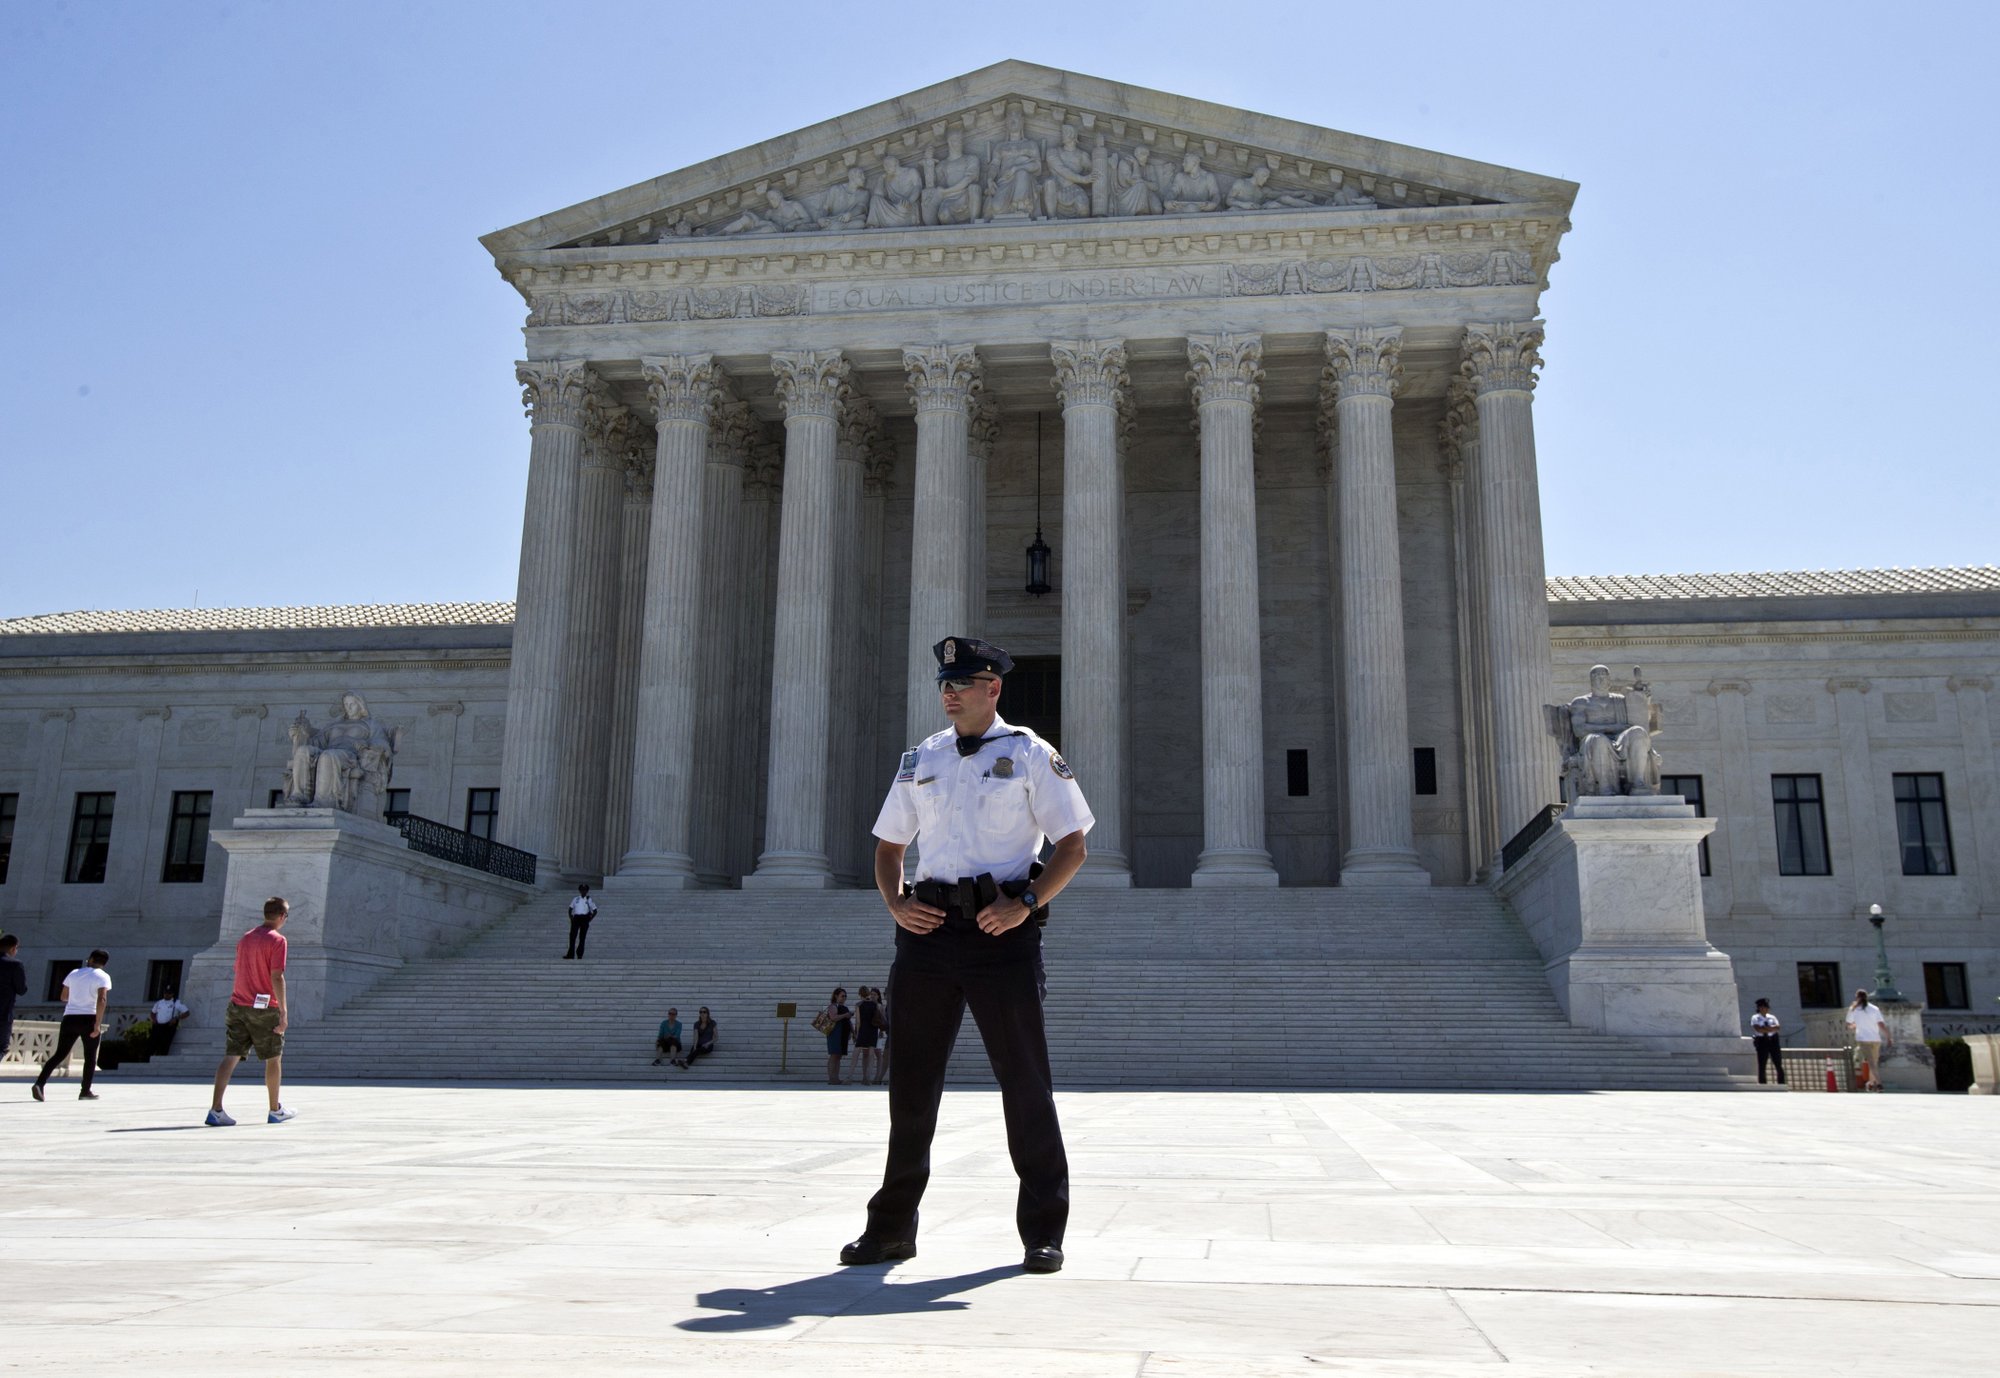 CCJS Undergrad Blog: U S Supreme Court Police information session